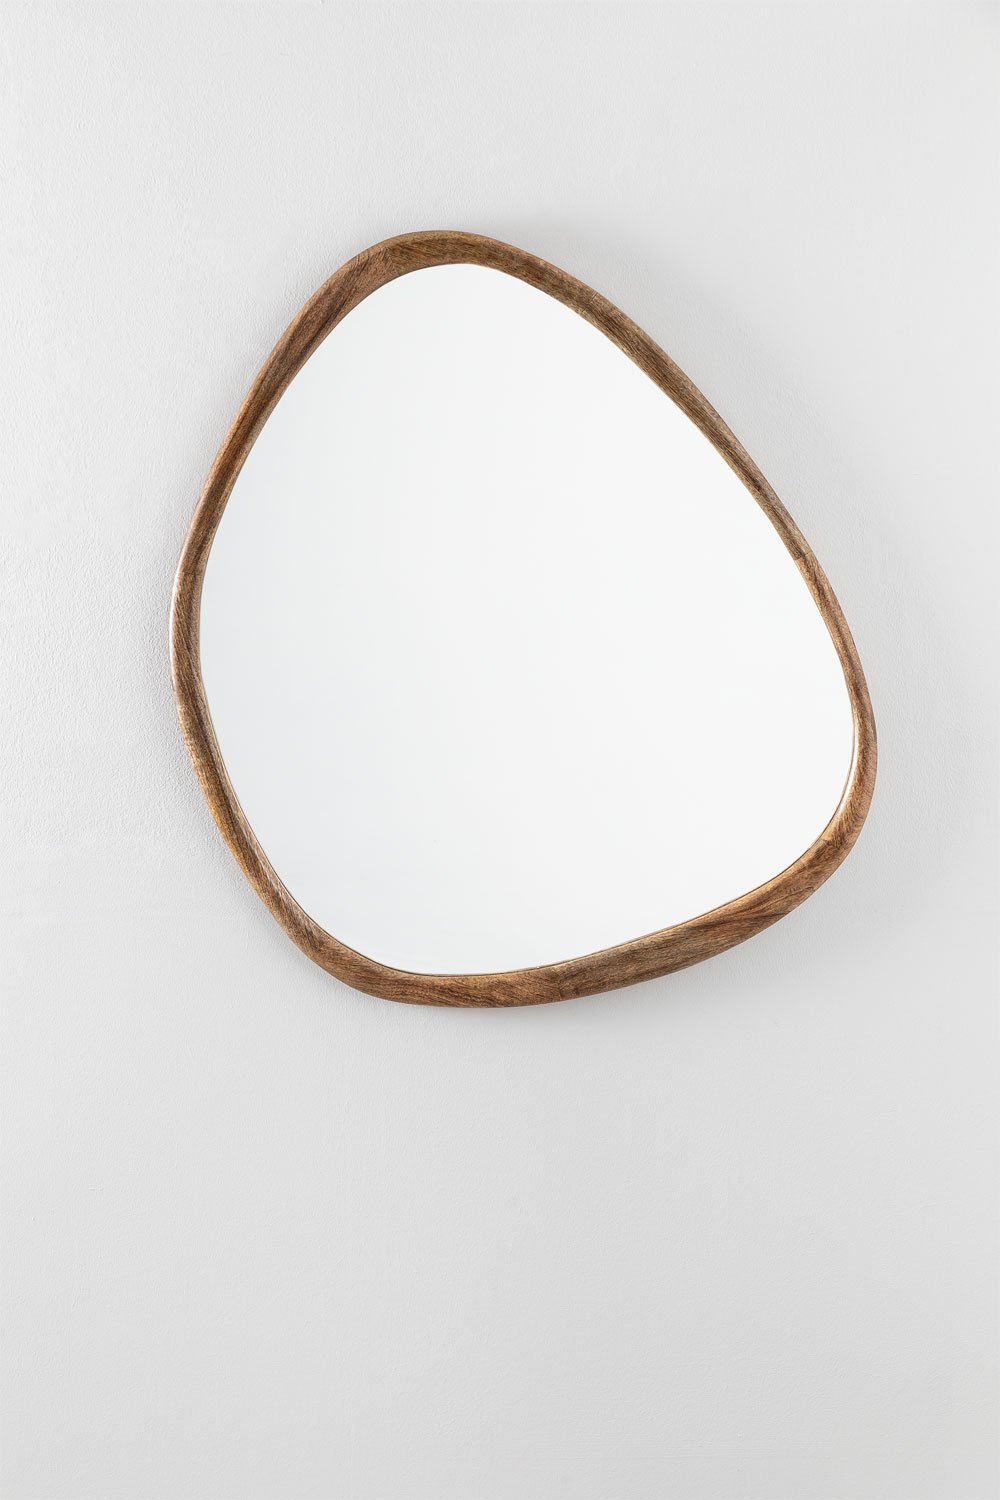 Specchio da parete in legno di mango (86x70 cm) Dilian , immagine della galleria 2